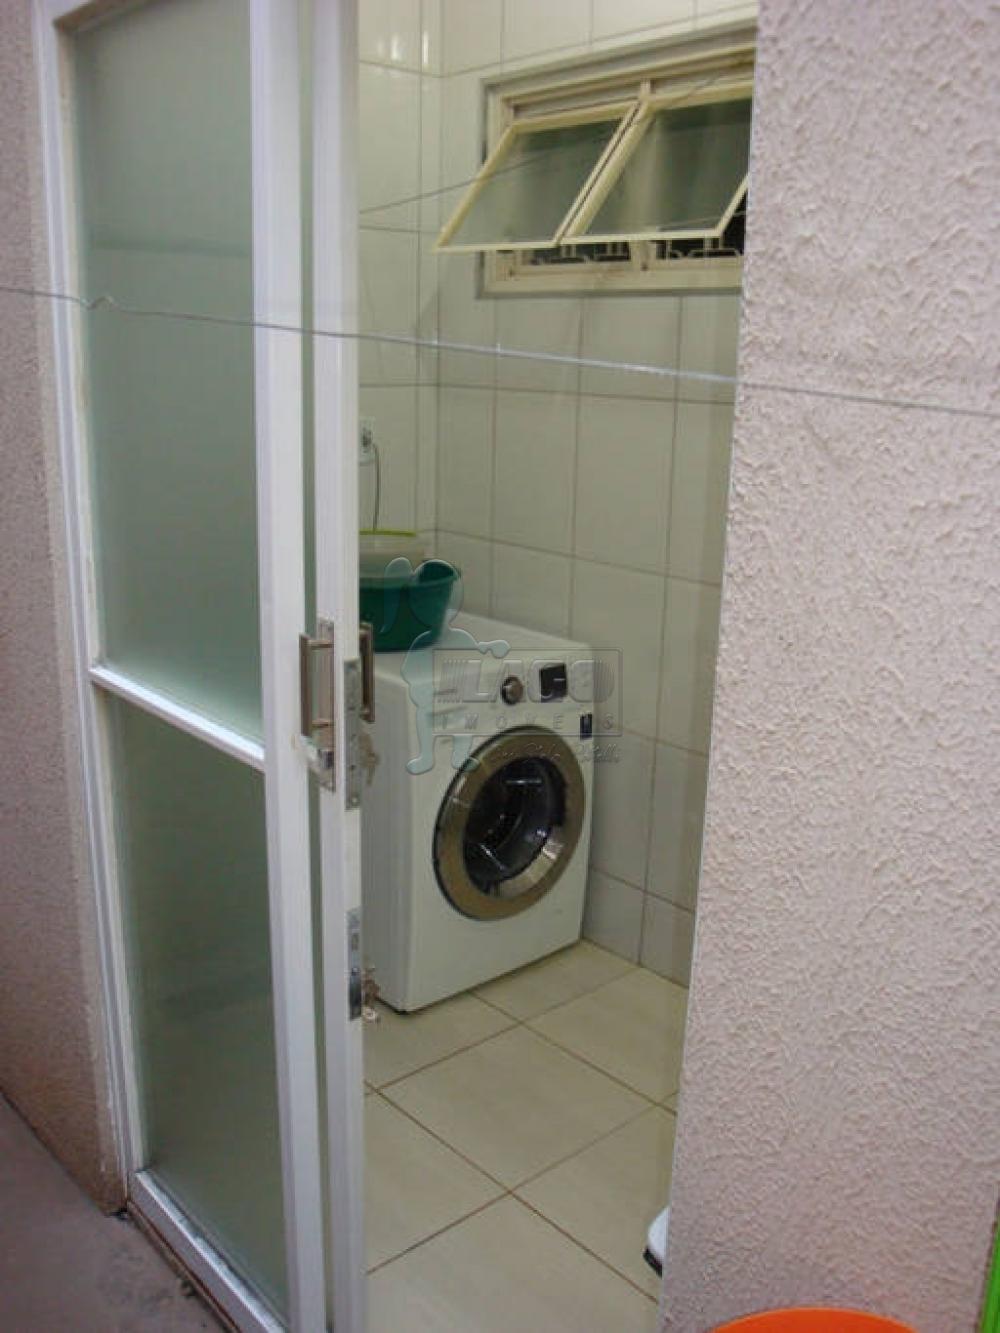 Comprar Apartamentos / Padrão em Ribeirão Preto R$ 210.000,00 - Foto 12